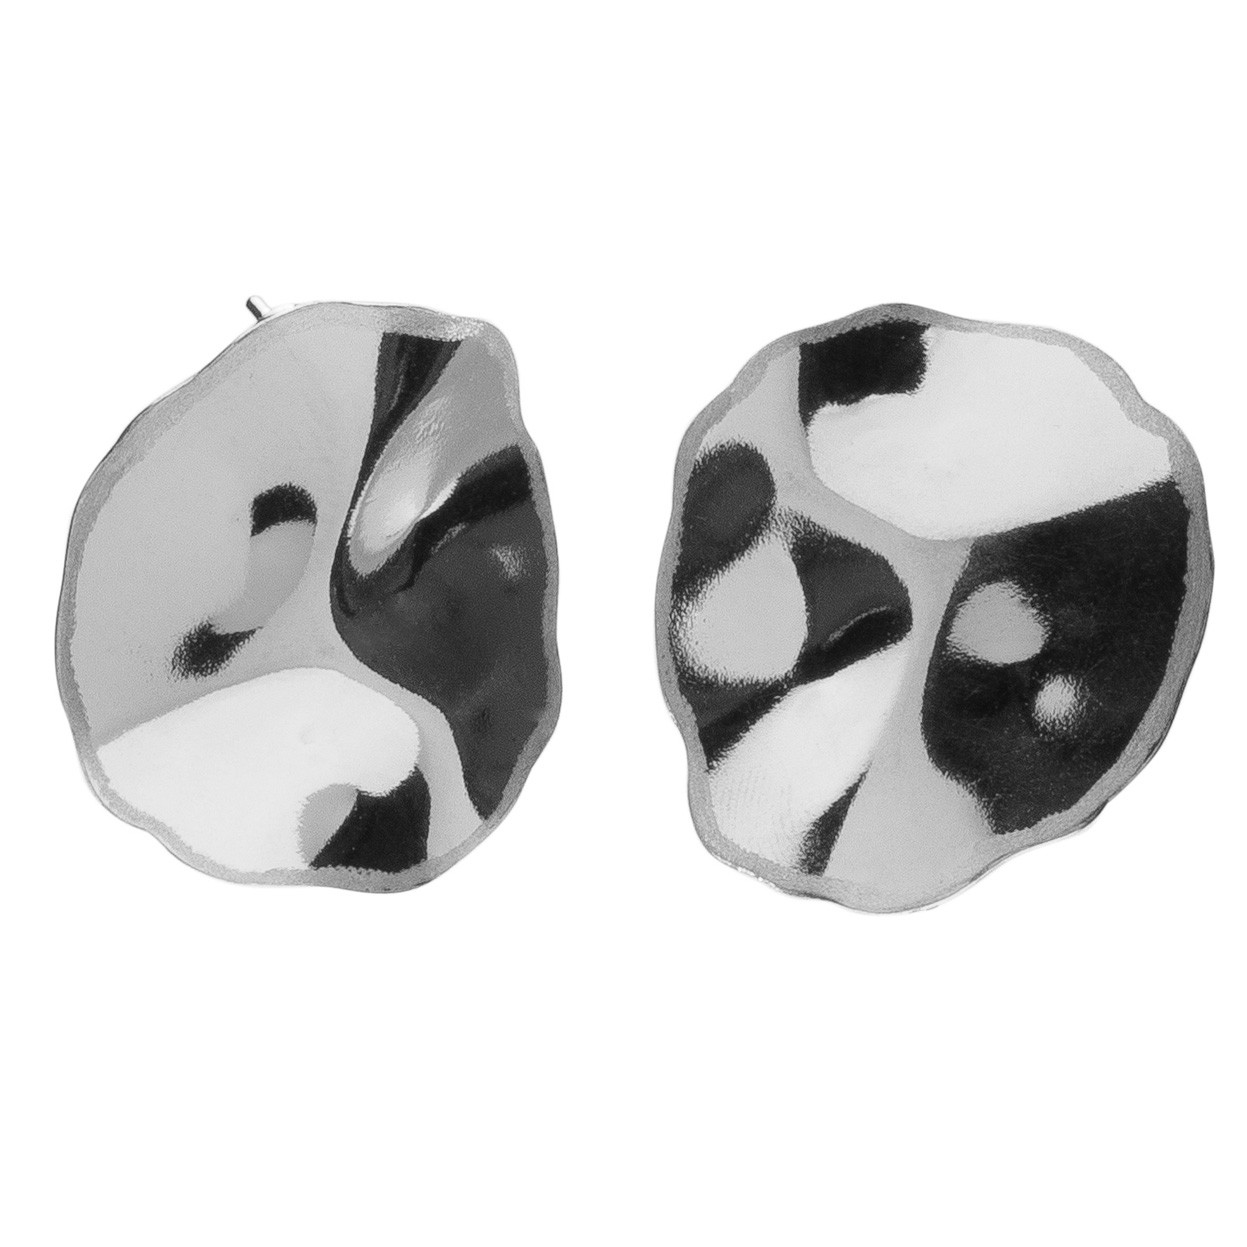 Wavy earrings sterling silver 925